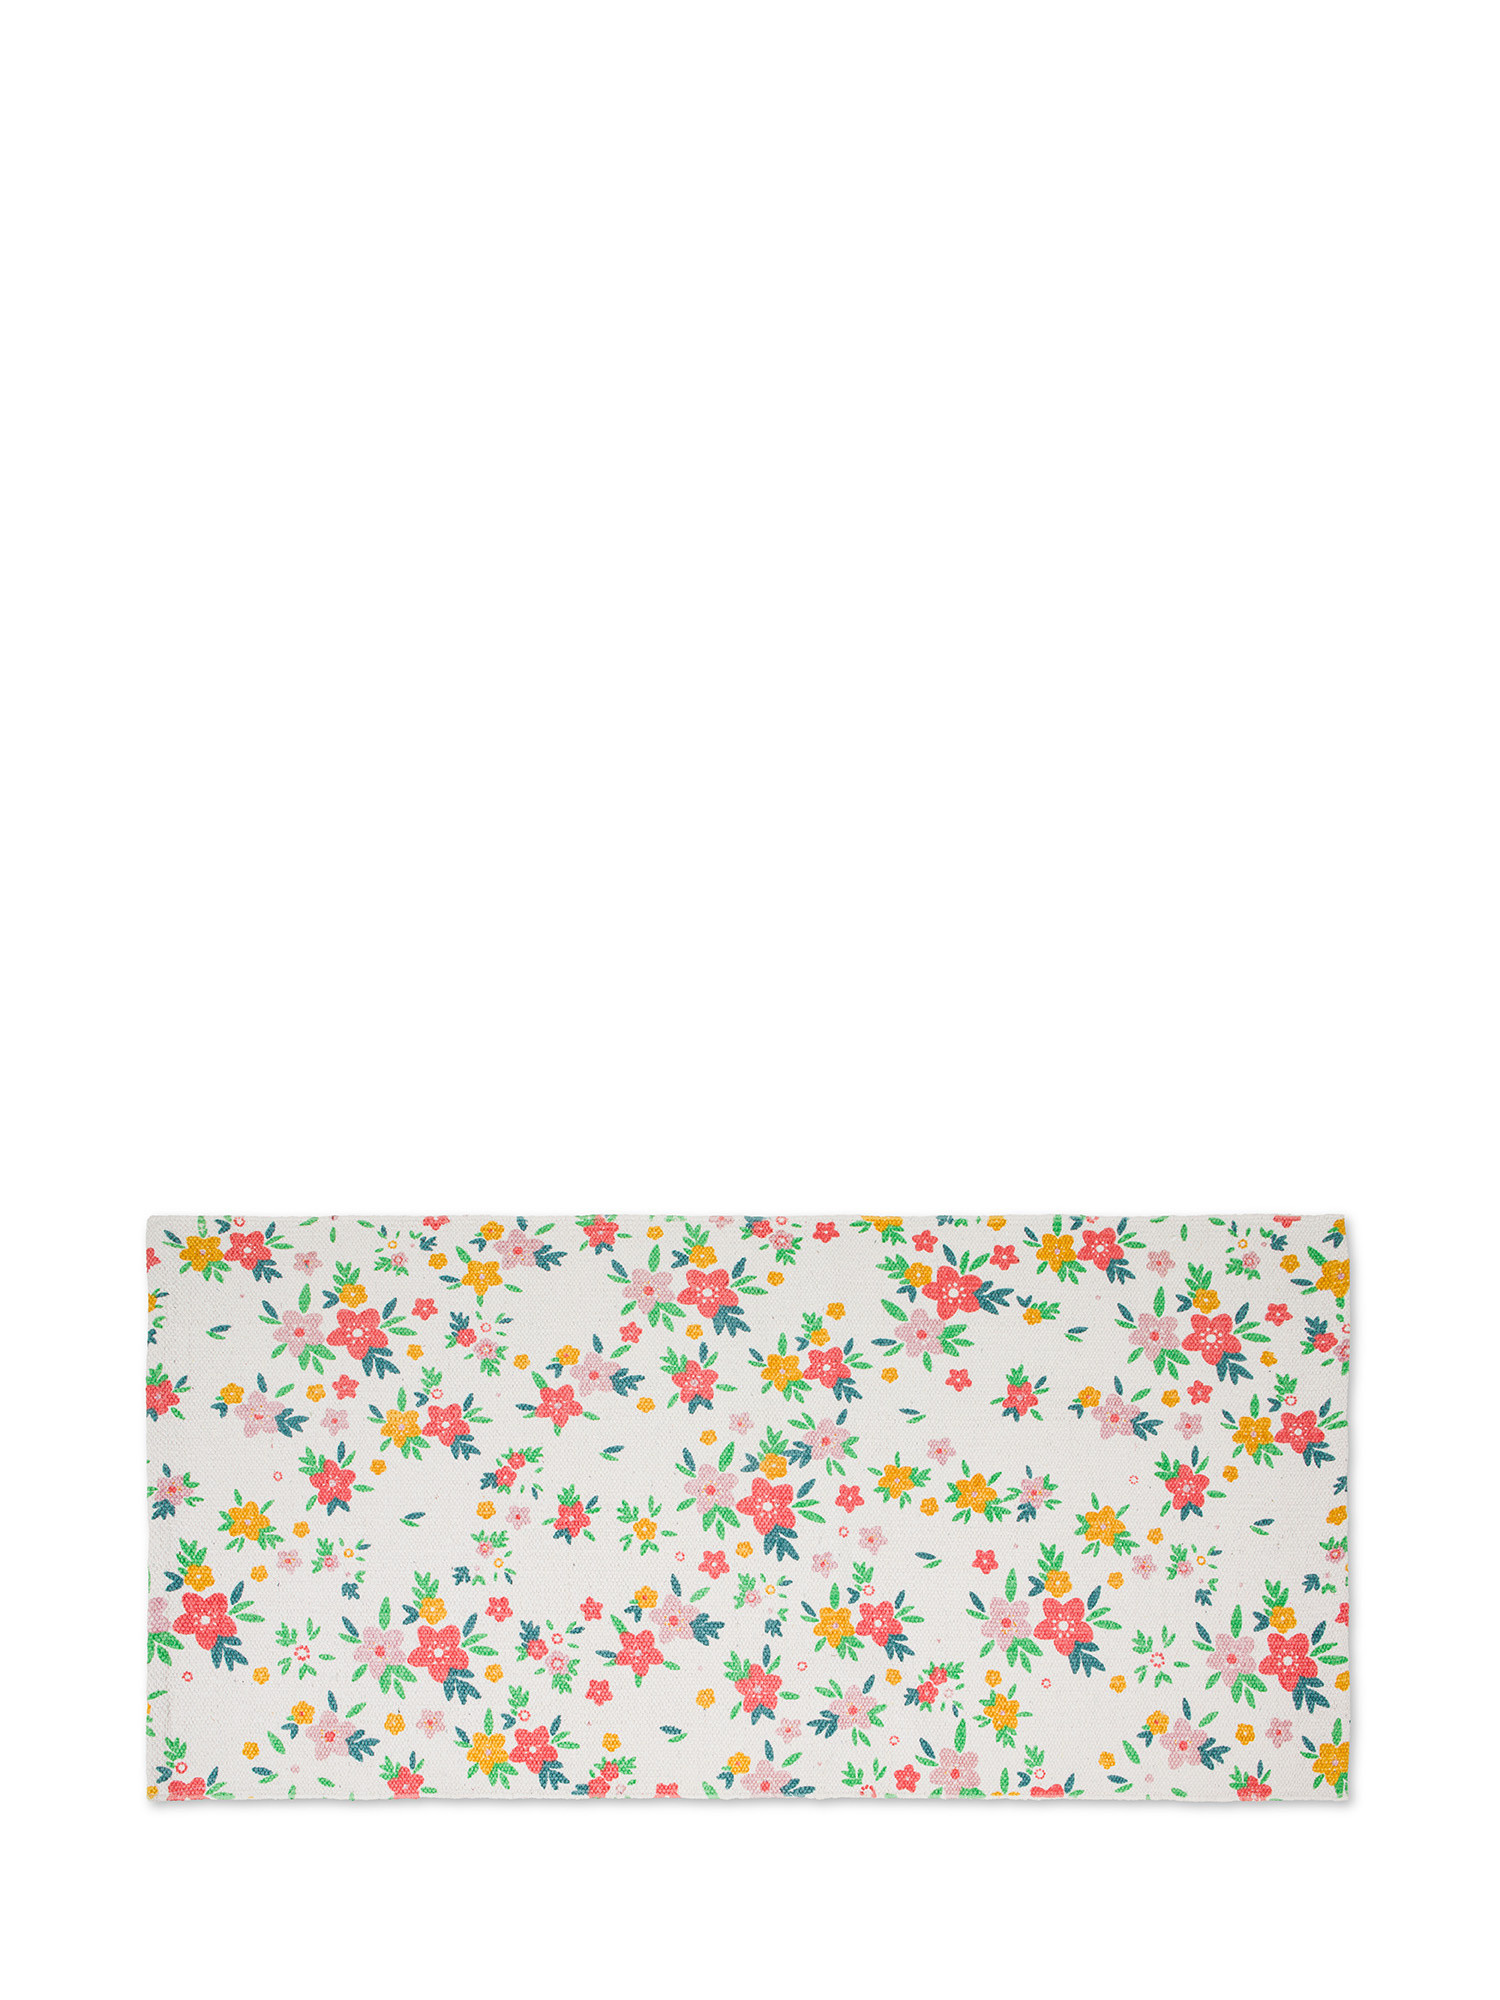 Tappeto da cucina puro cotone stampa fiori, Multicolor, large image number 0